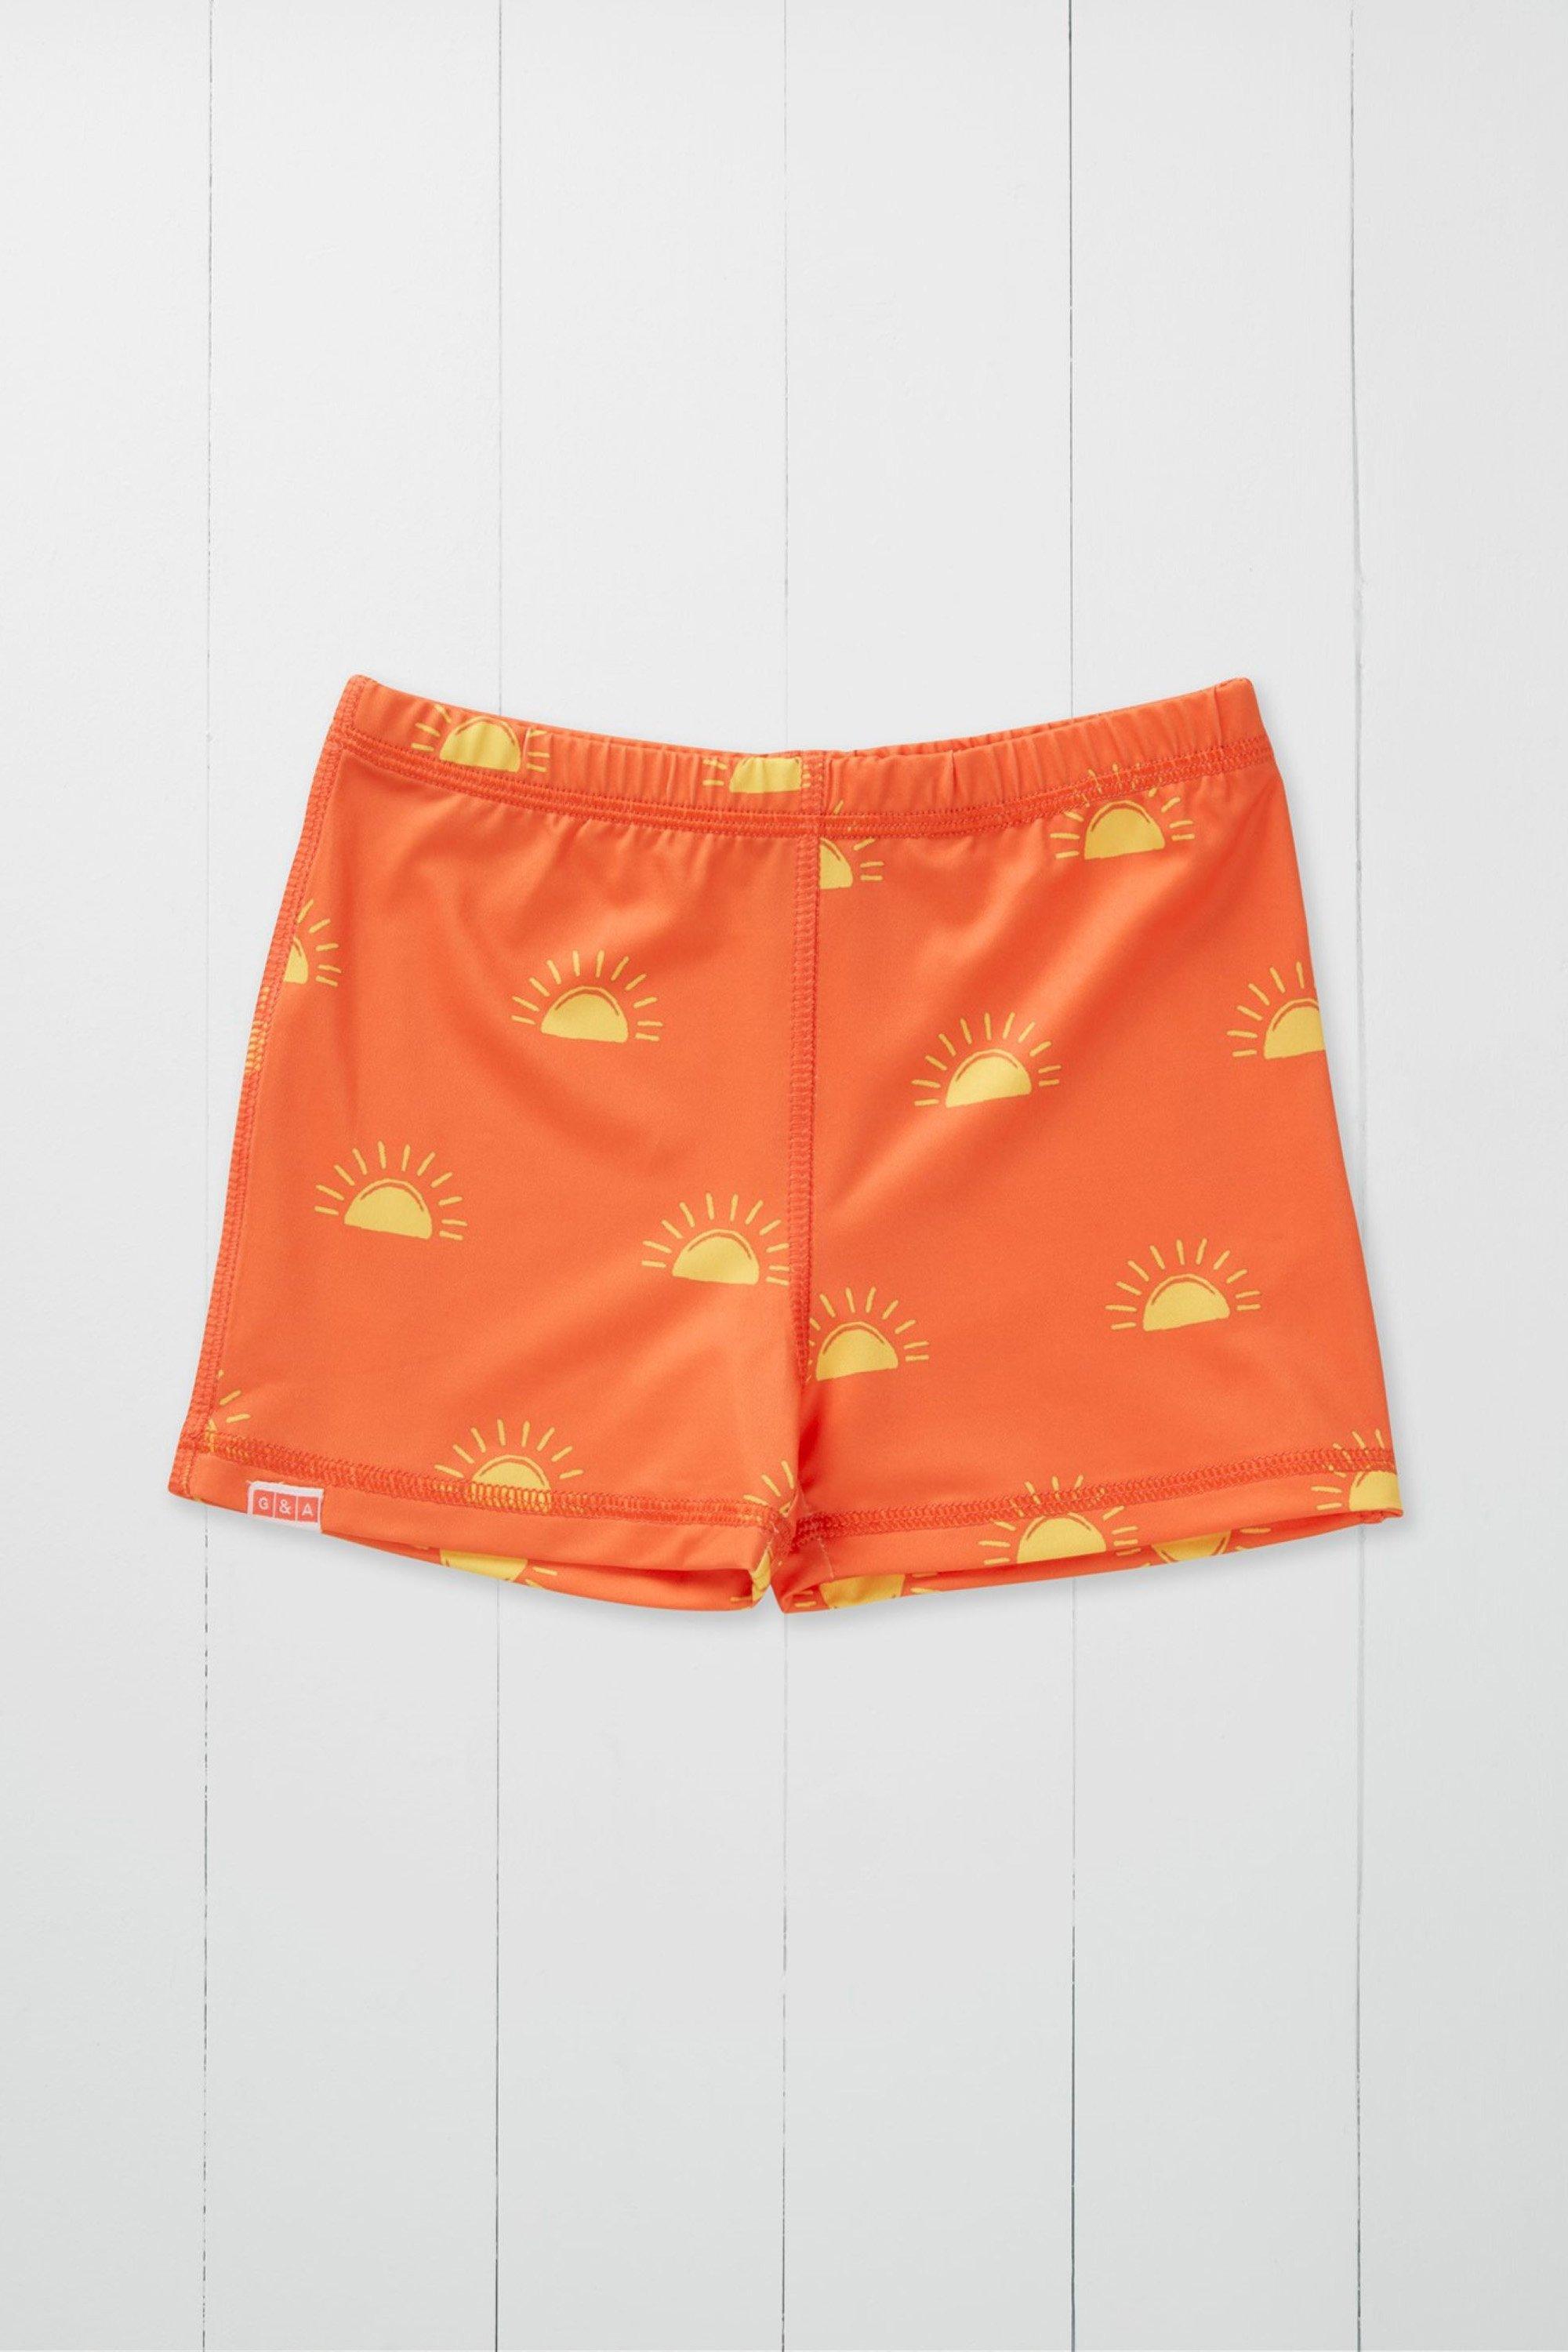 Детские шорты для плавания с принтом Sun Grass & Air, оранжевый шорты на шнуровке на 9 12 месяцев